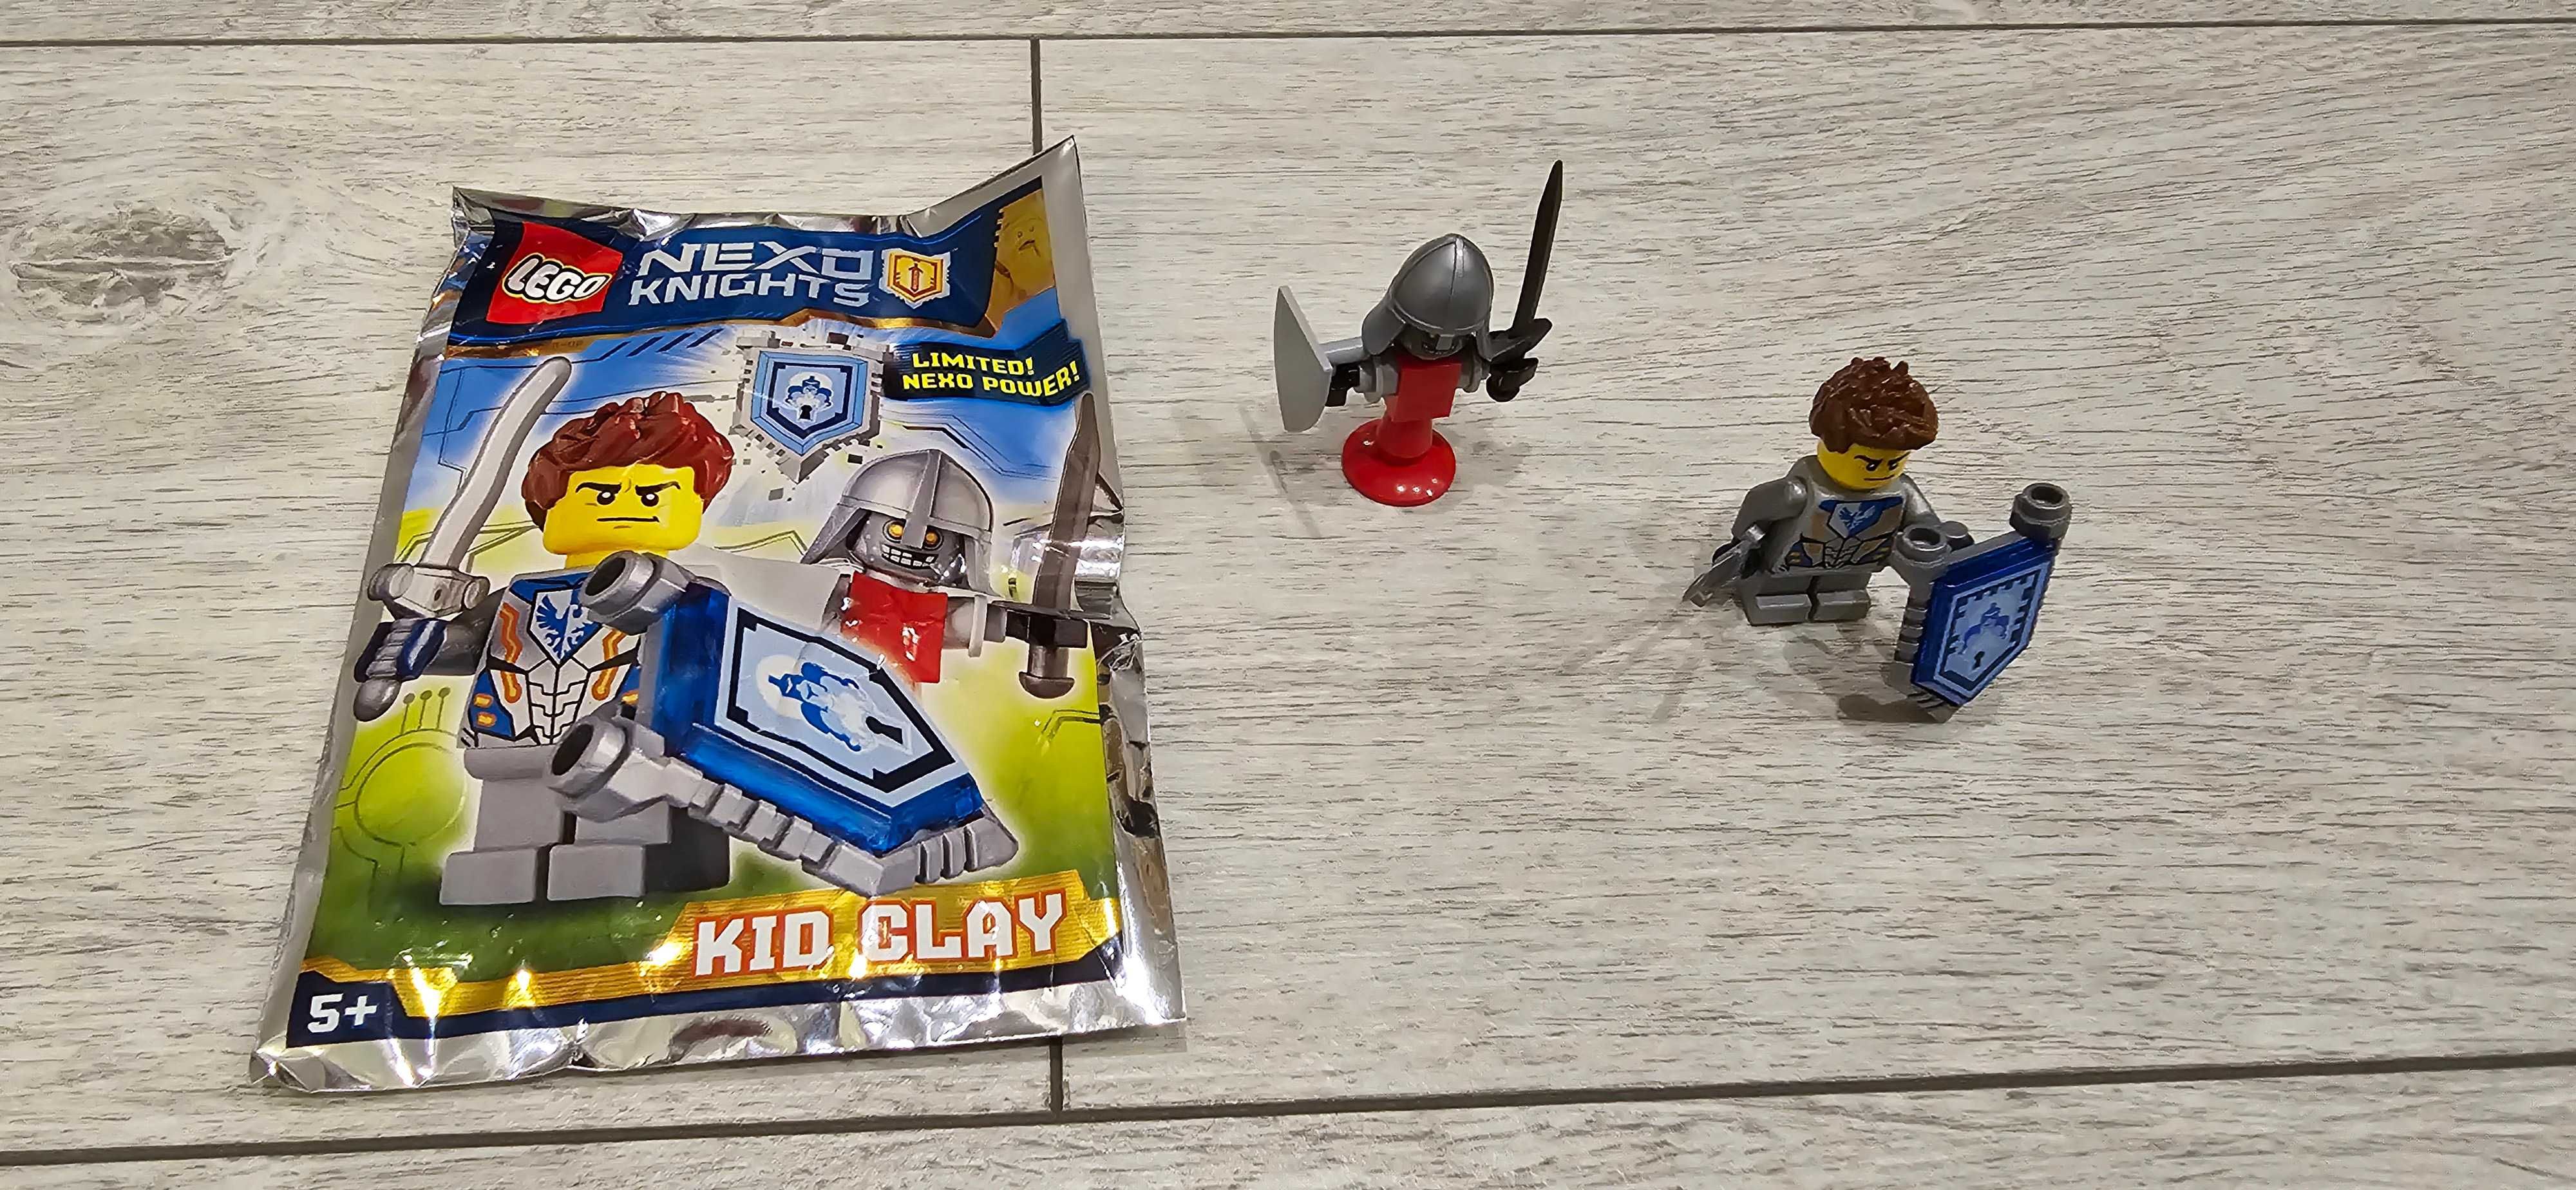 Zestaw klocków LEGO NEXO KNIGHTS Kid Clay